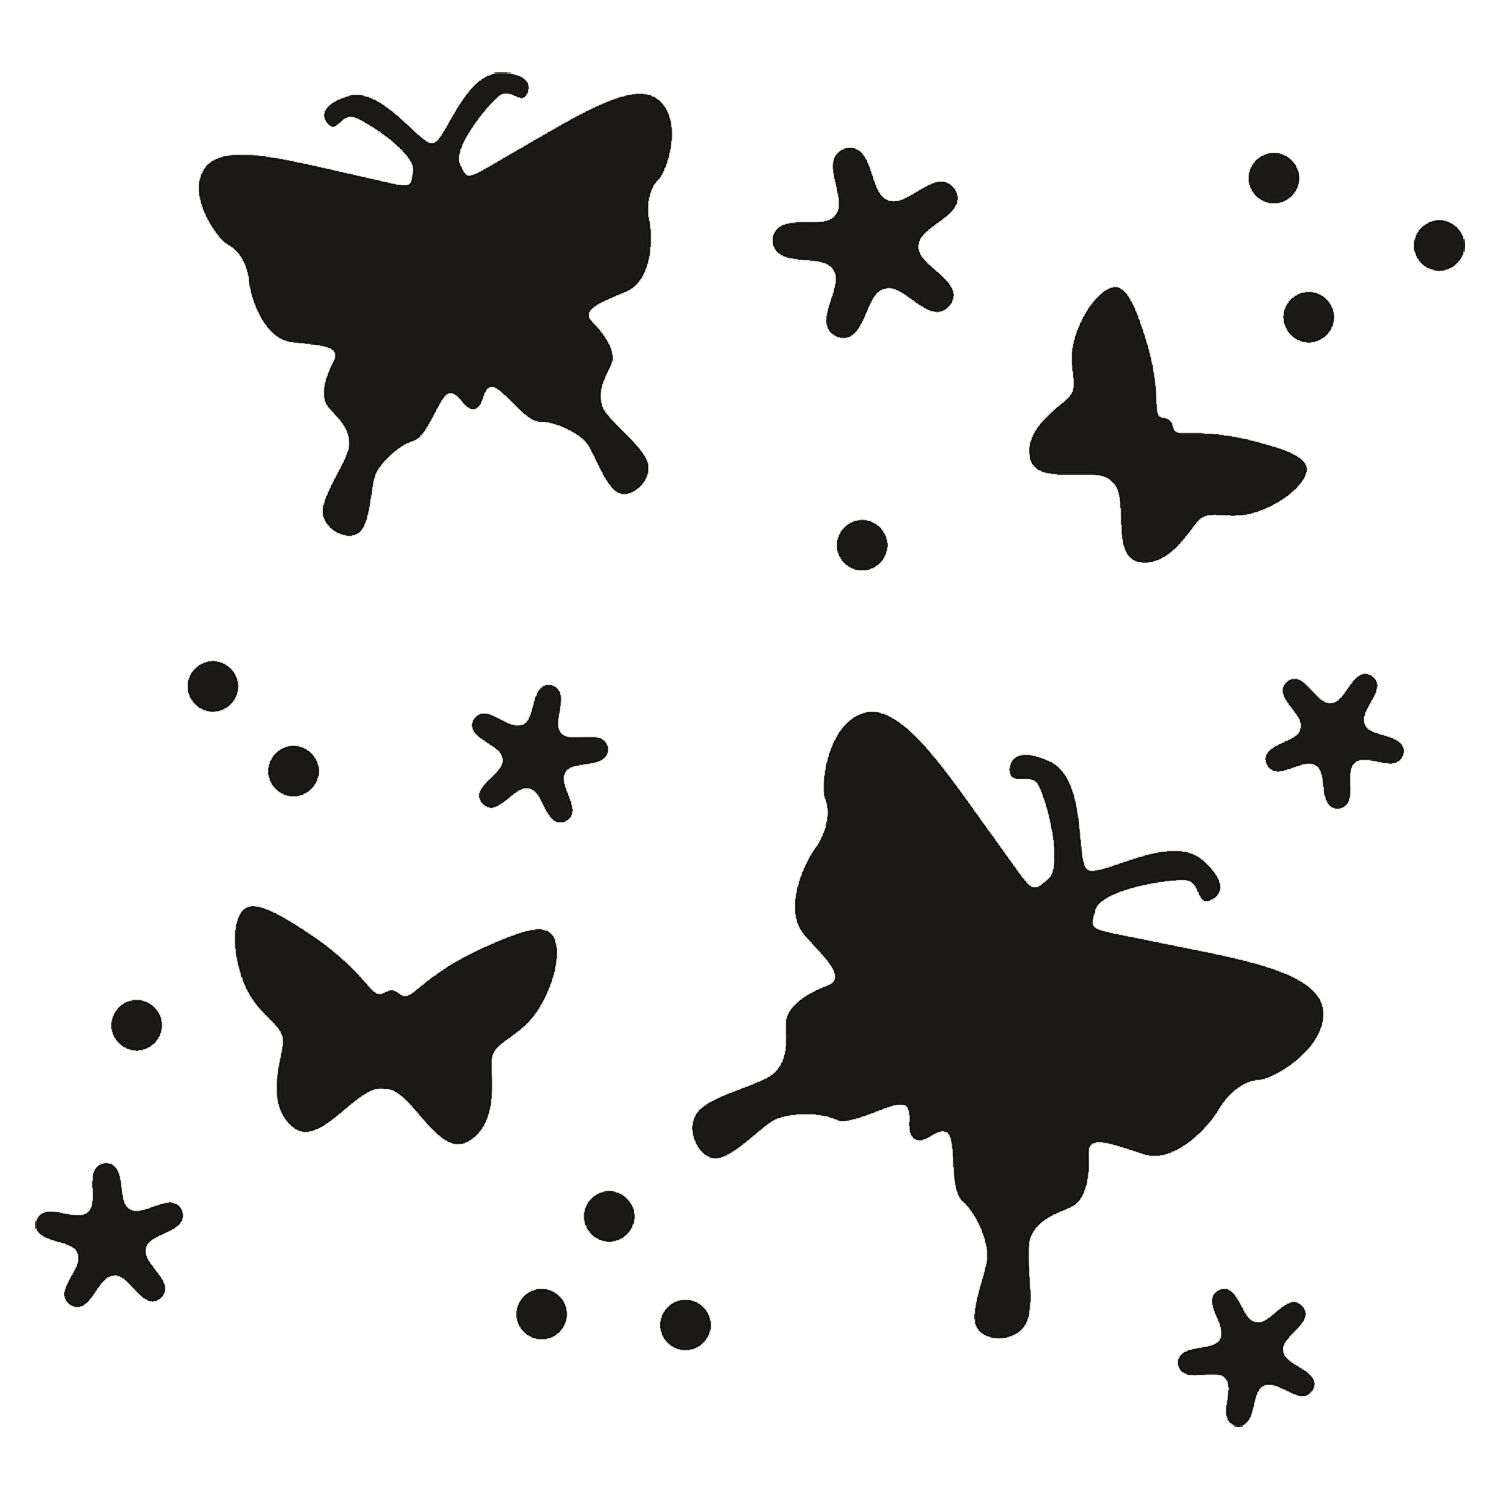 NEU Flexi-Motiv-Stanzer an jeder Stelle des Papiers, Schmetterlinge, Motivgröße ca. 4cm Bild 2